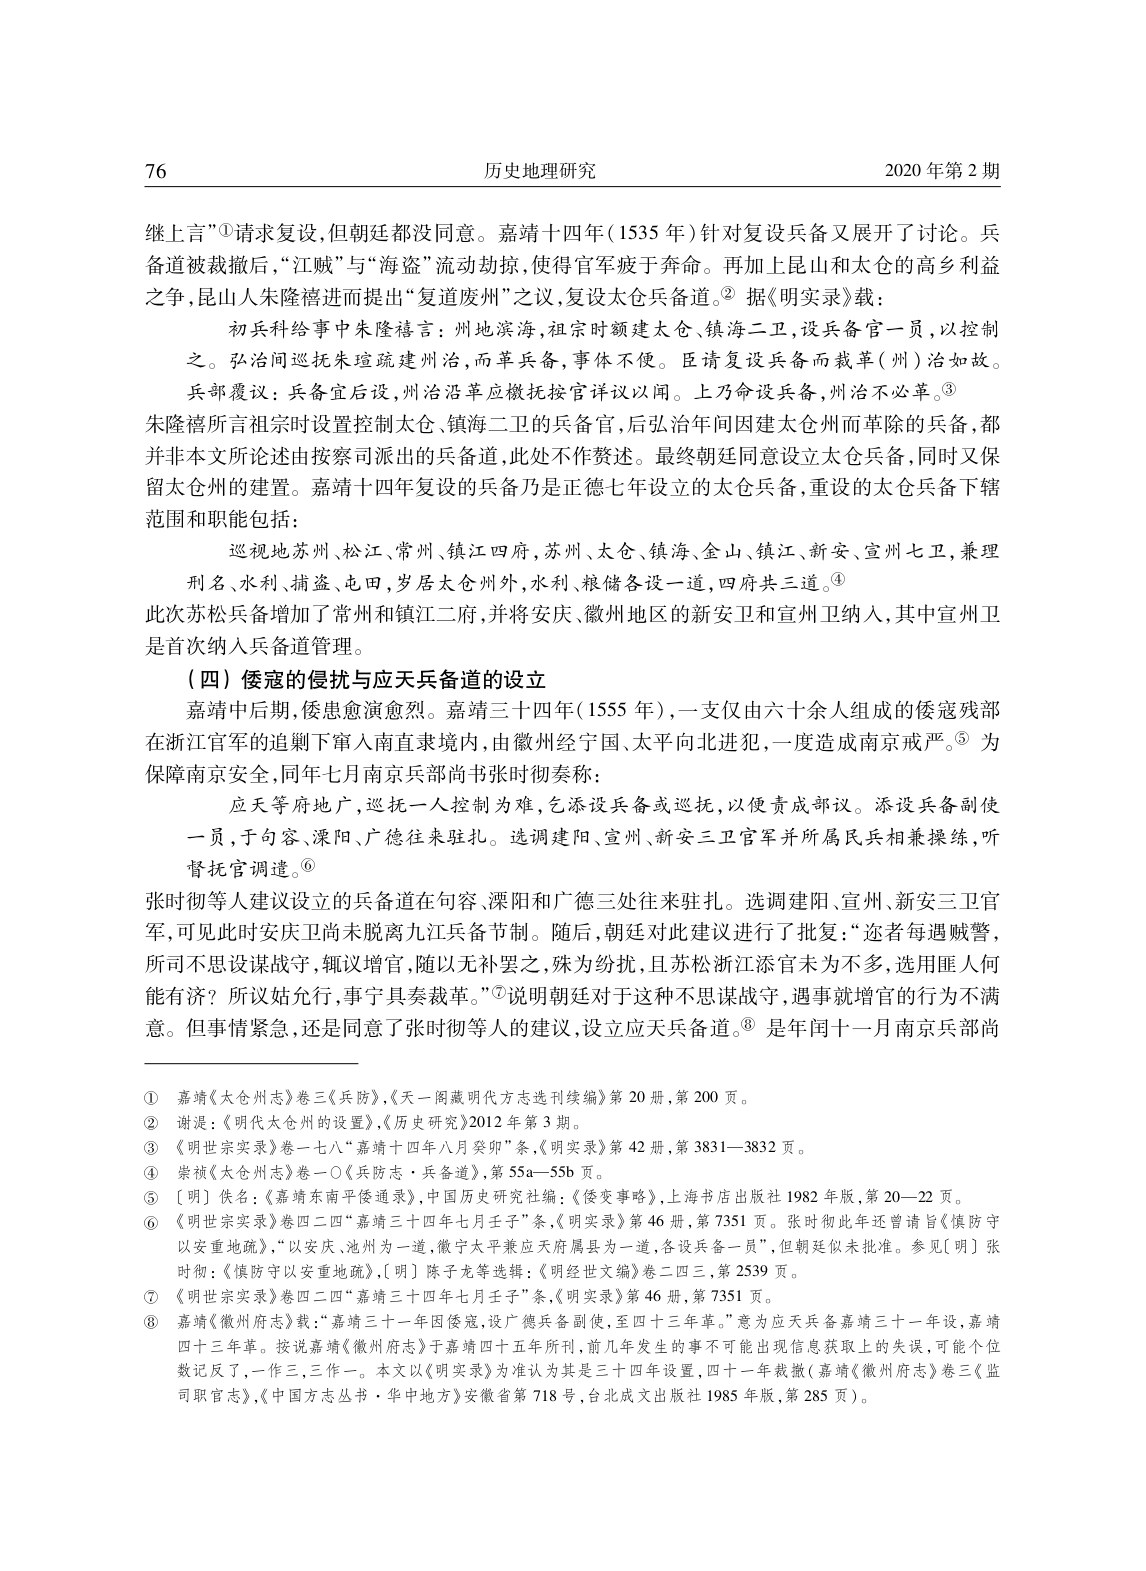 明代安庆、徽州地区兵备道分合演变考论_page-0005.jpg